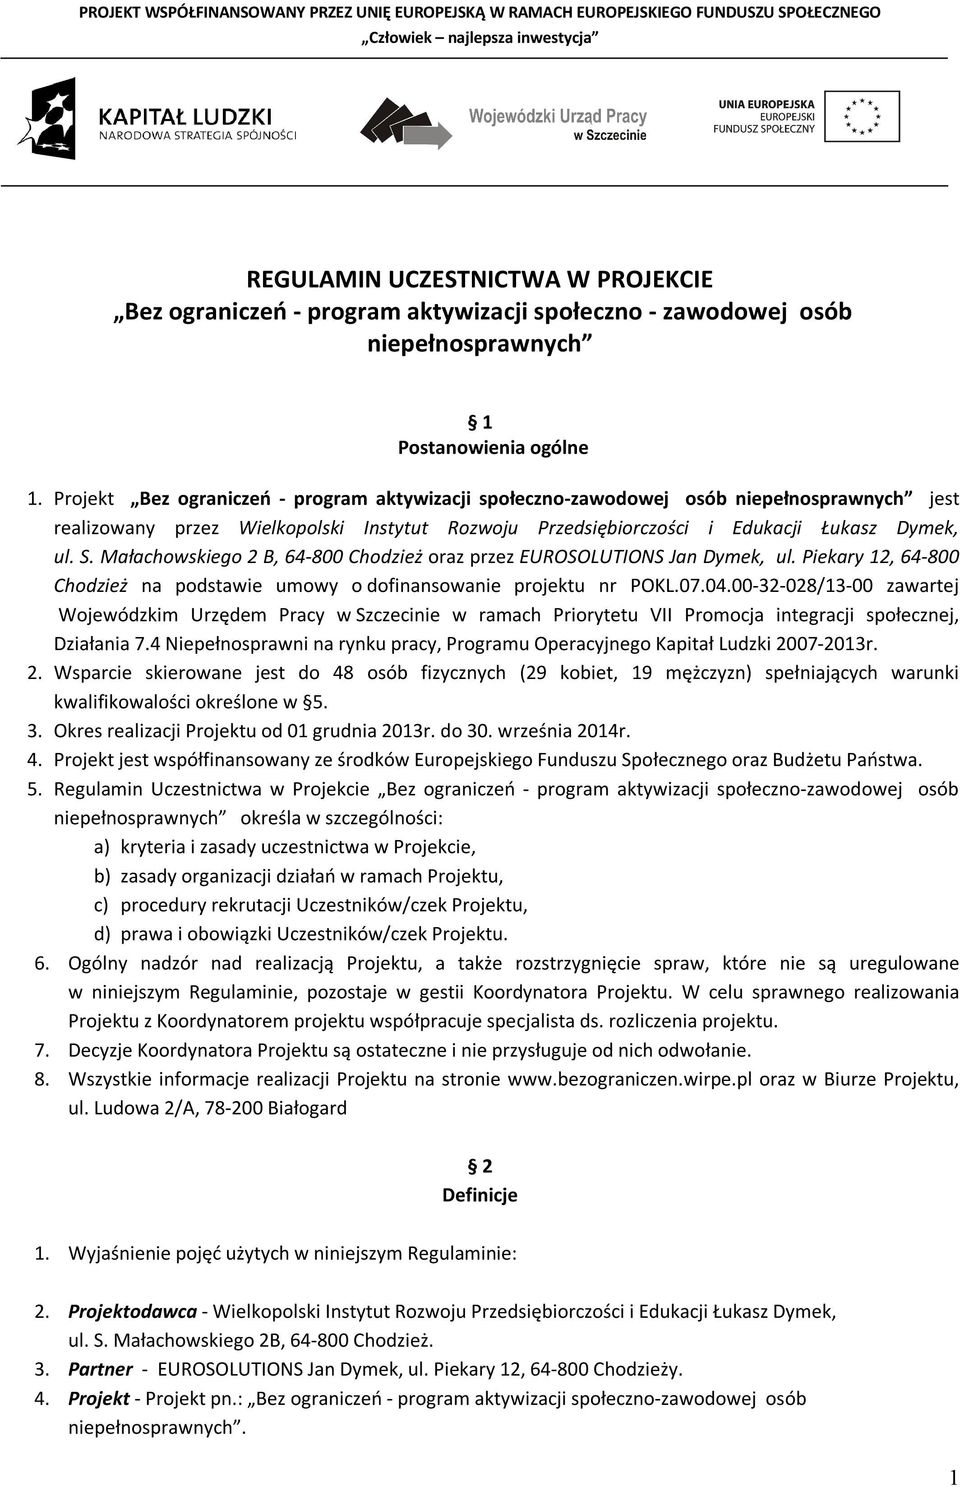 Małachowskiego 2 B, 64-800 Chodzież oraz przez EUROSOLUTIONS Jan Dymek, ul. Piekary 12, 64-800 Chodzież na podstawie umowy o dofinansowanie projektu nr POKL.07.04.